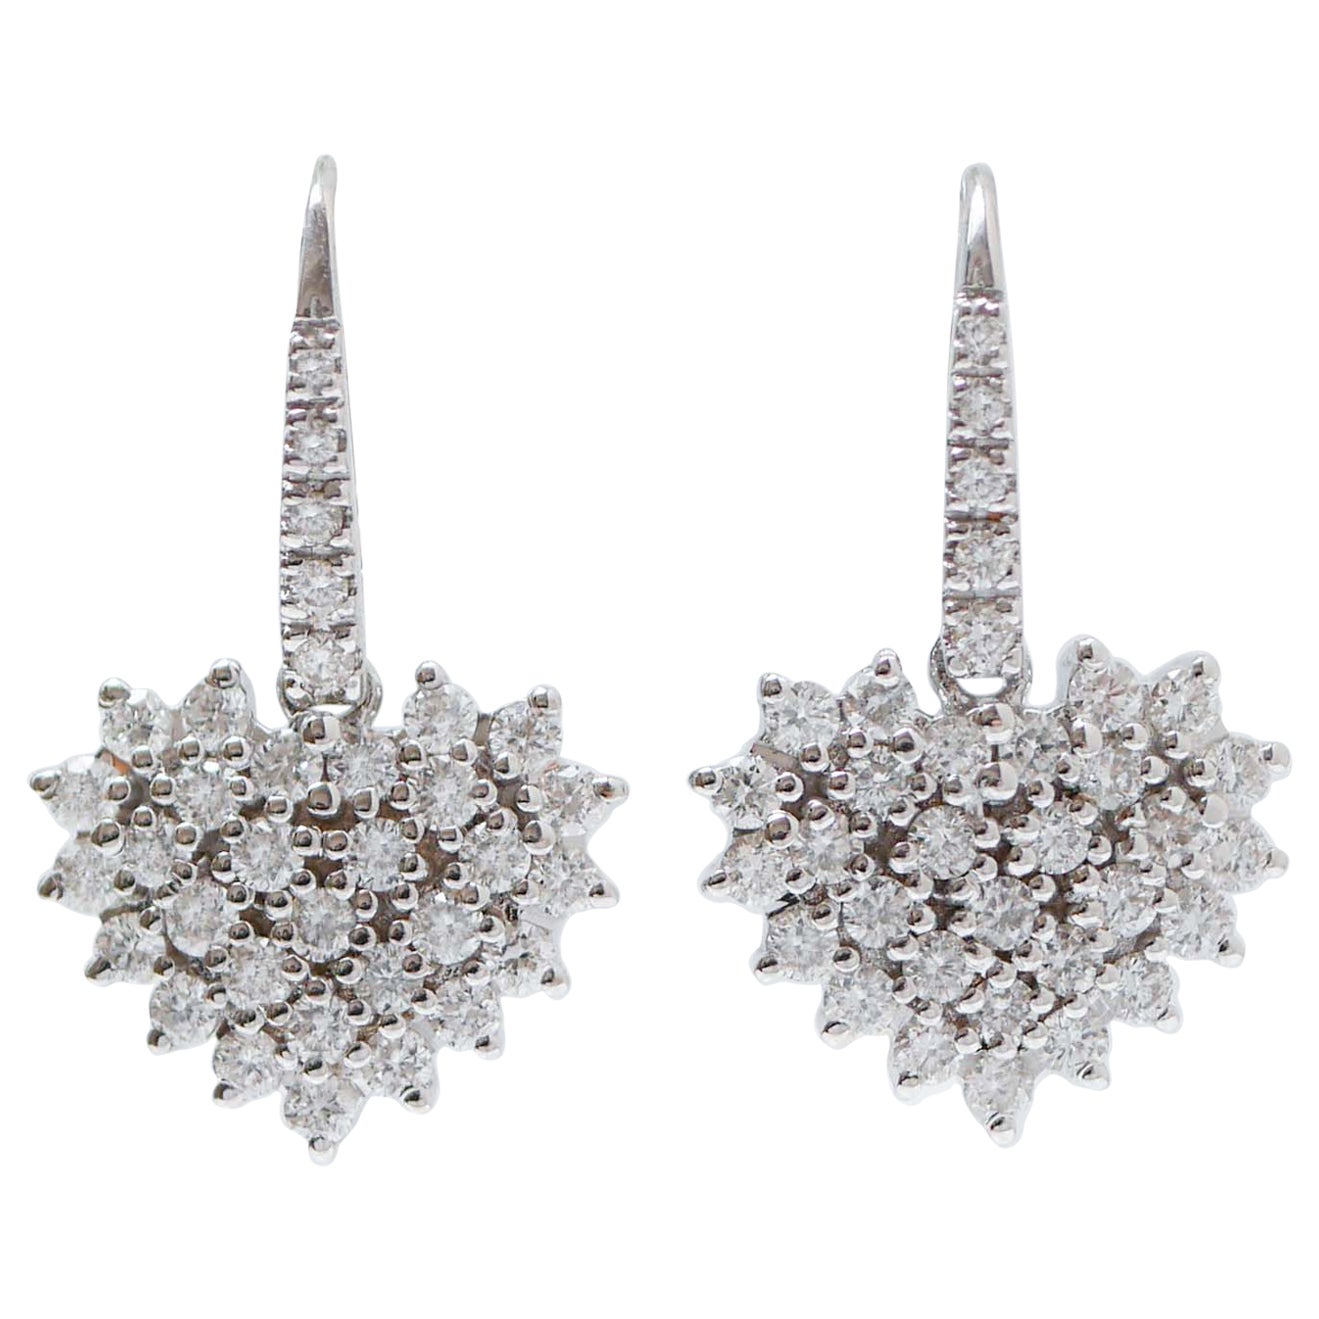 Diamonds, 18 Karat White Gold Heart Pendant Earrings.